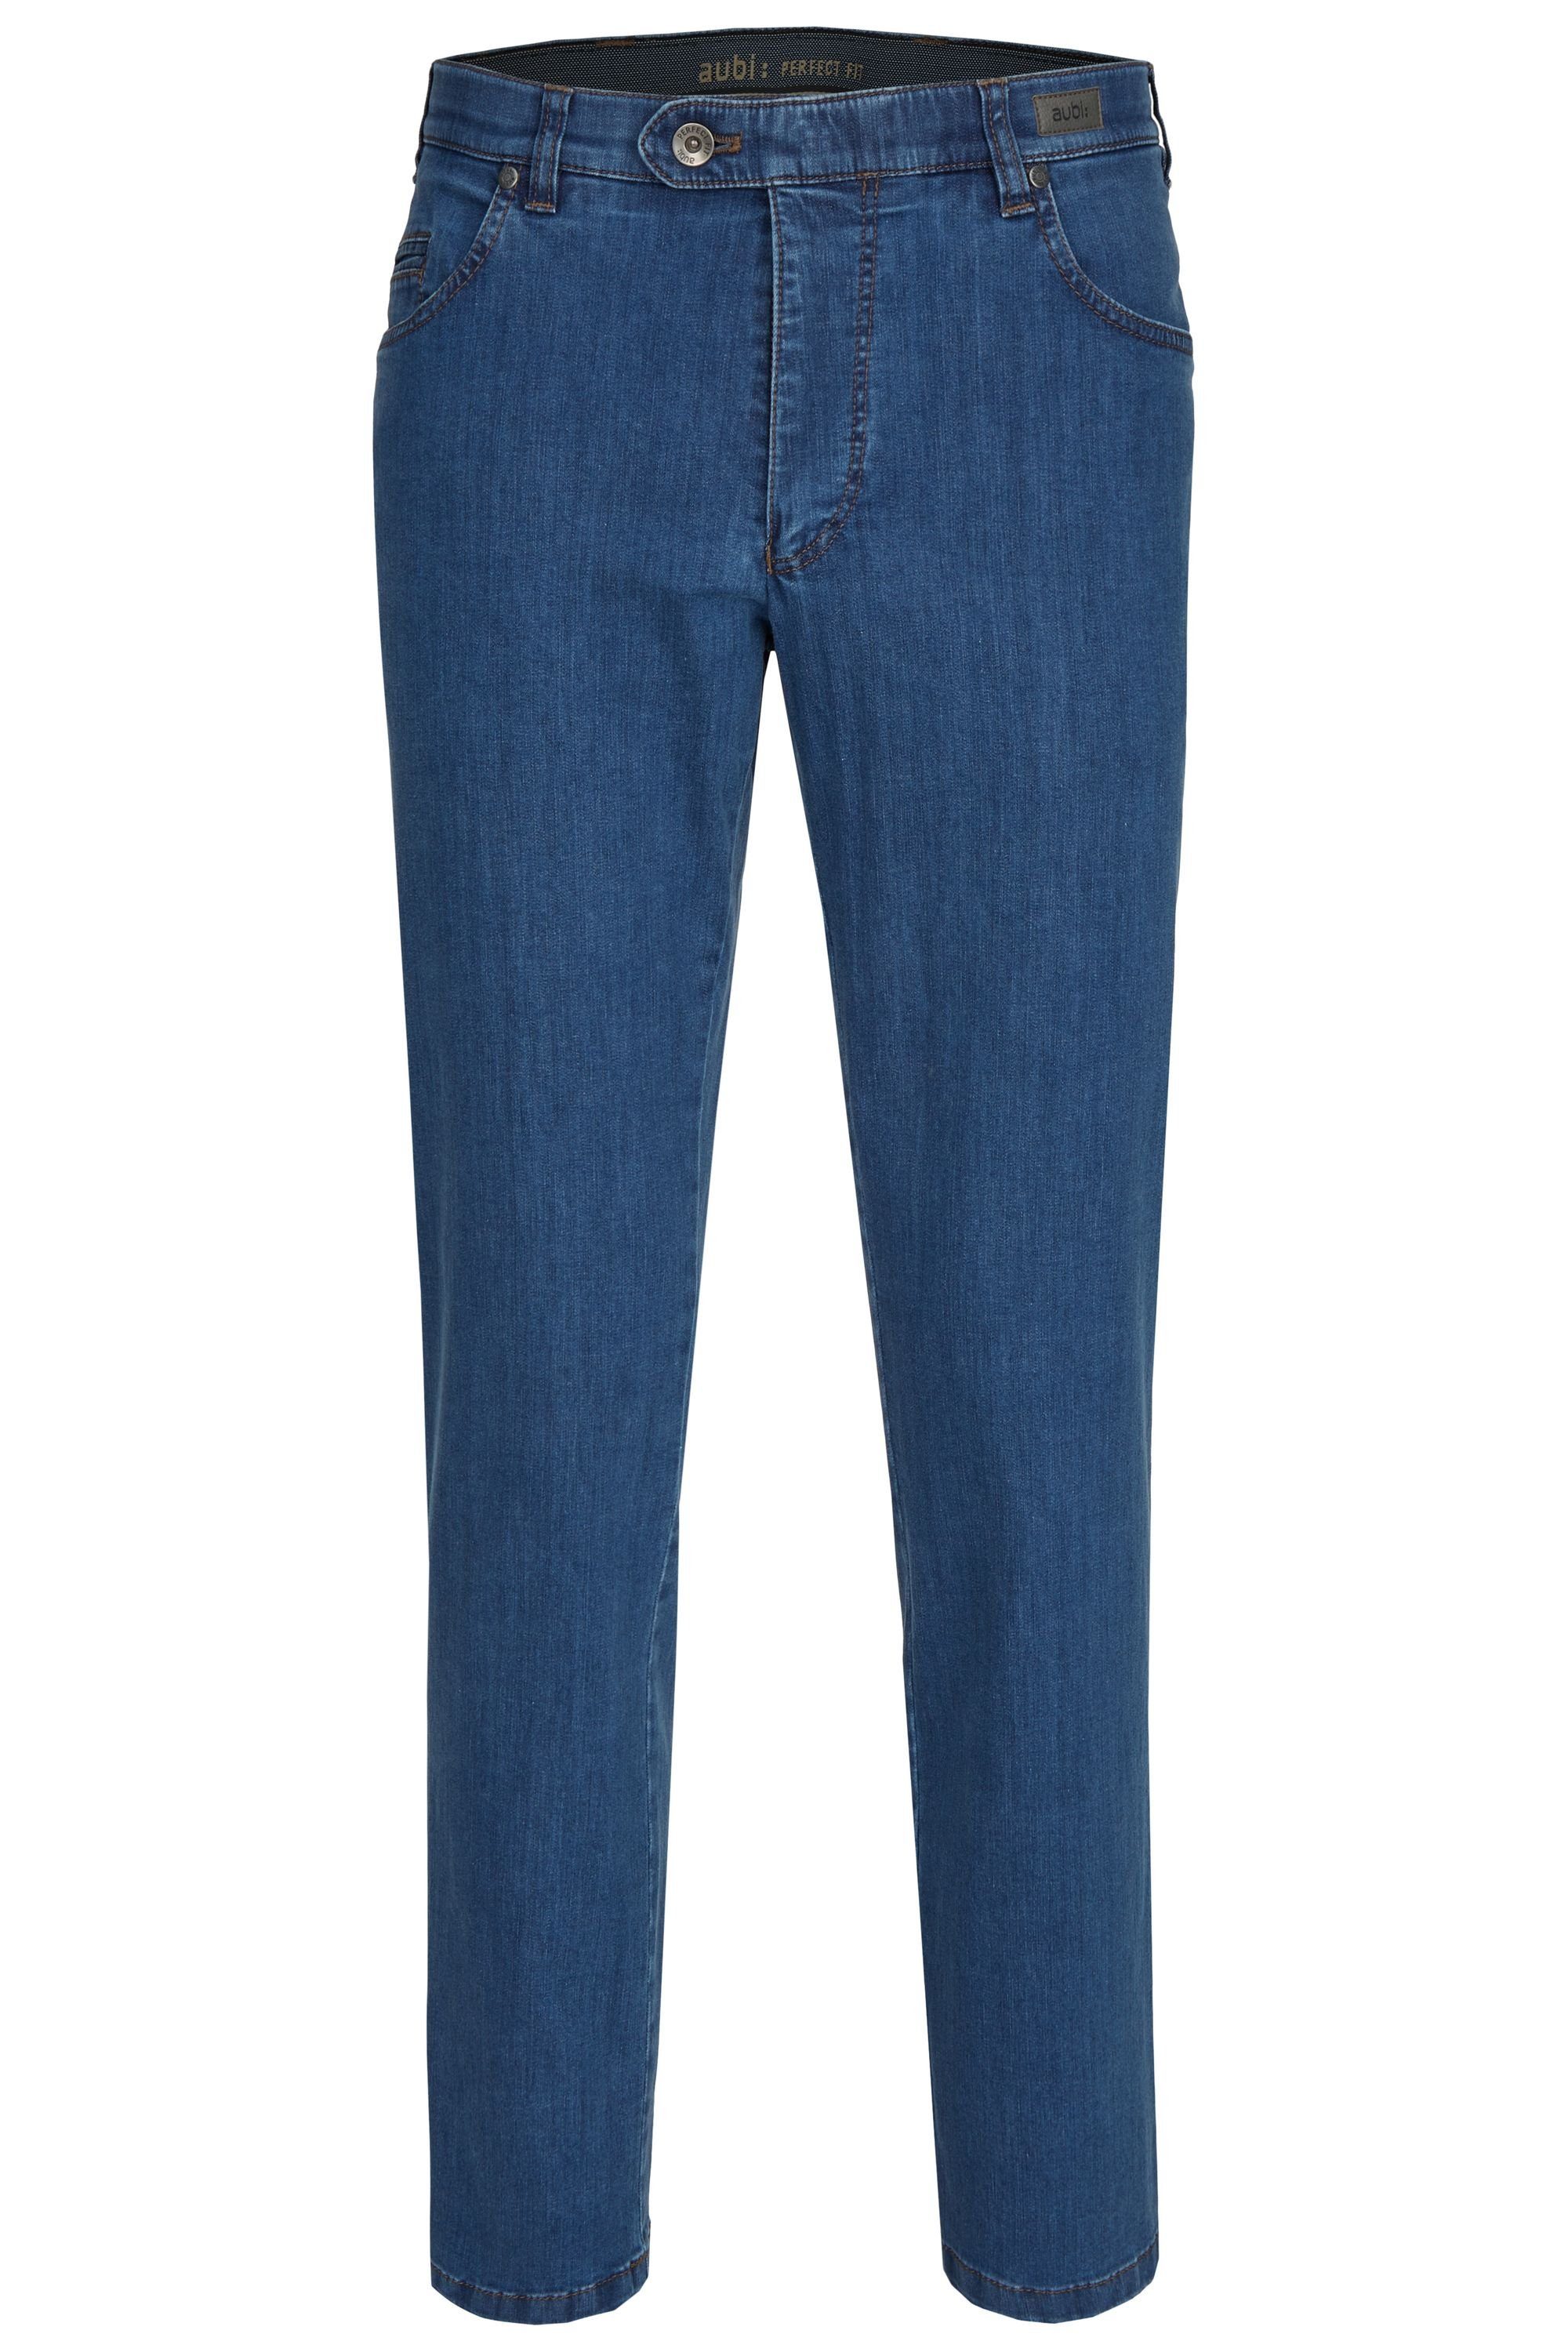 High Jeans Fit 577 Flex stone Modell Bequeme aus aubi: Hose Baumwolle Herren Perfect Sommer Jeans aubi (46) Stretch